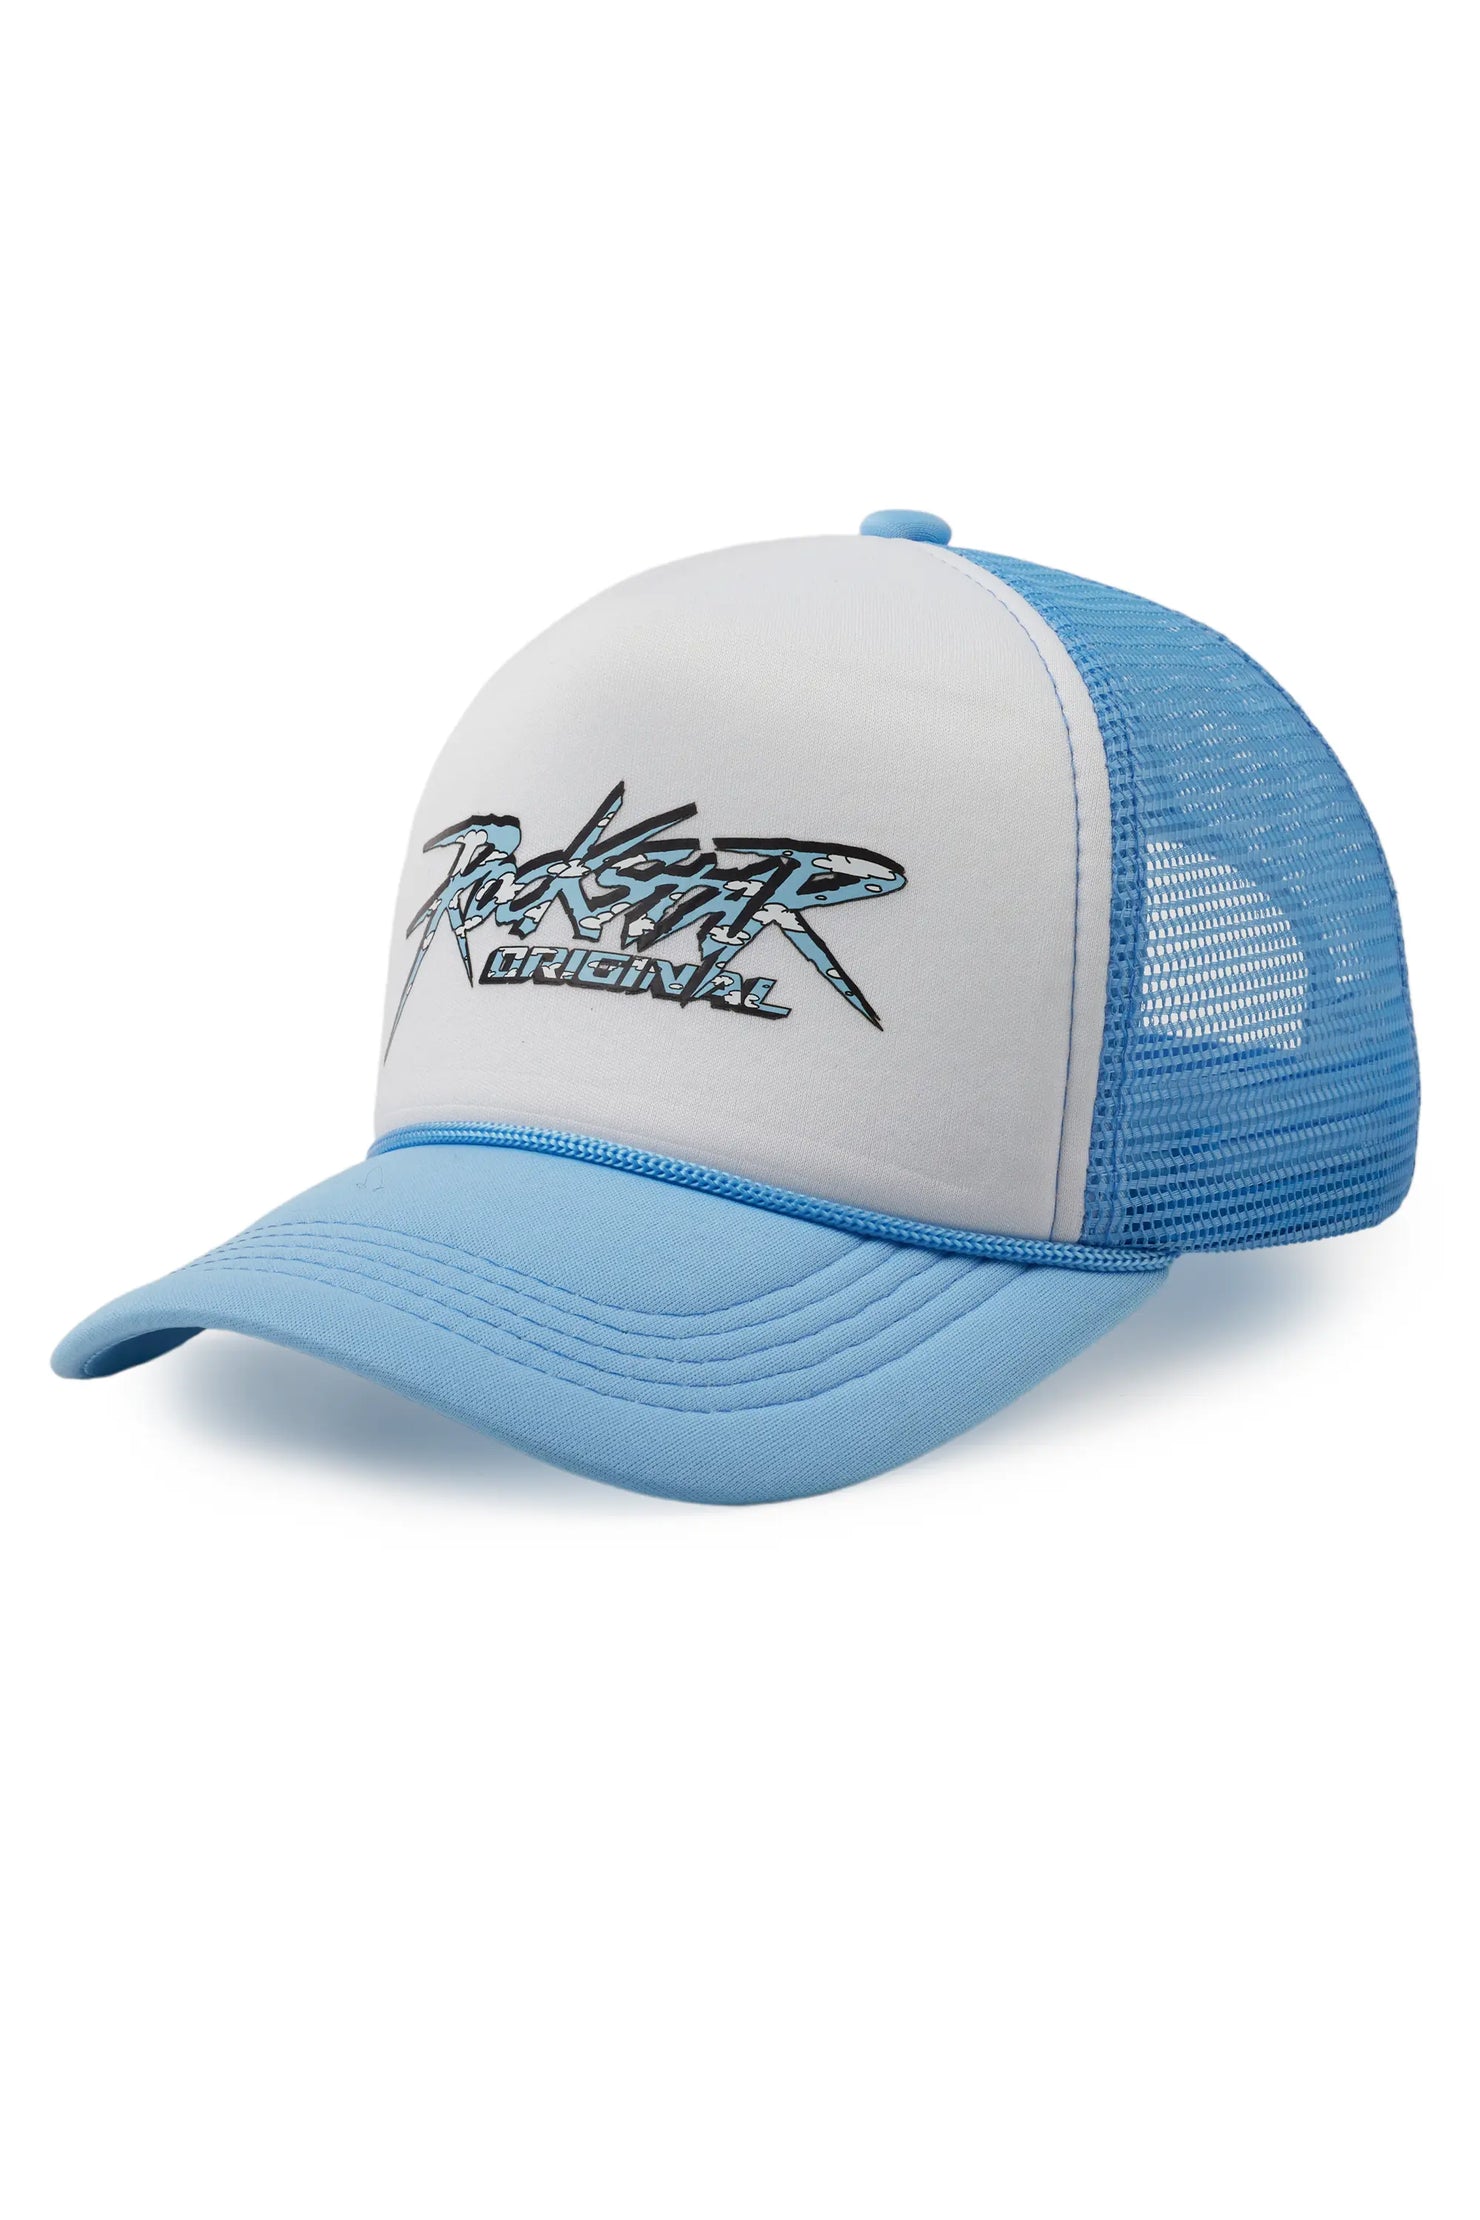 Kalliope White/Blue Trucker Hat